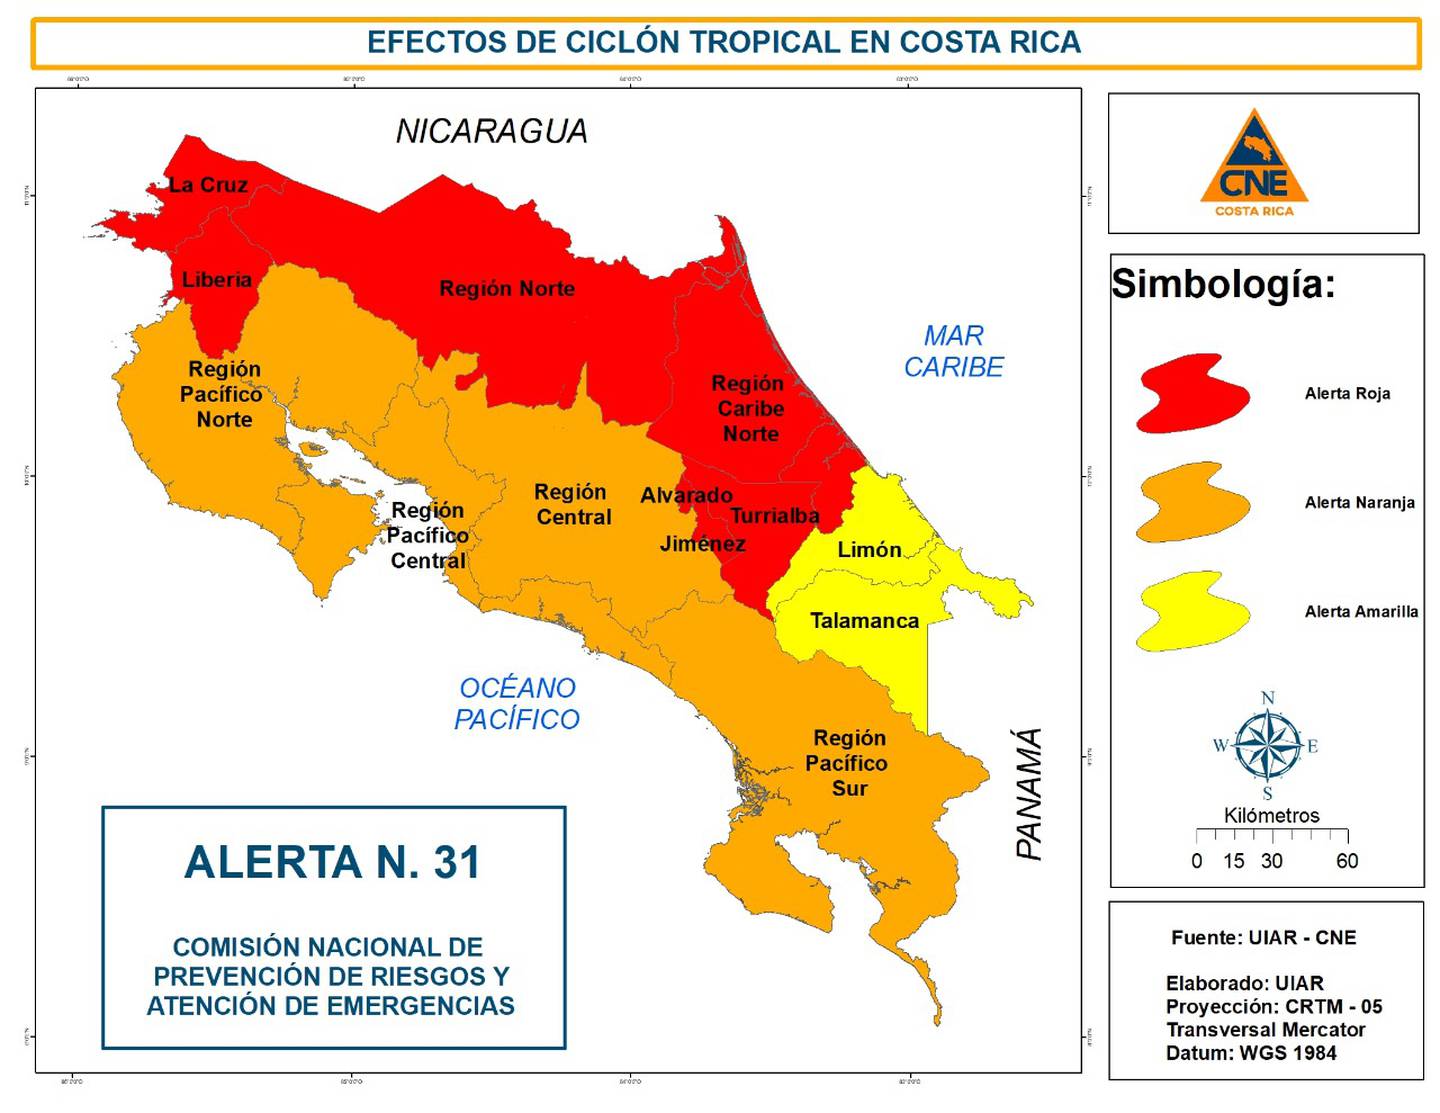 Al mediodía de este viernes la CNE anunció que los cantones cartagineses de Turrialba, Alvarado y Jiménez se unen a los otros 12 que están en alerta roja. Imagen: CNE.